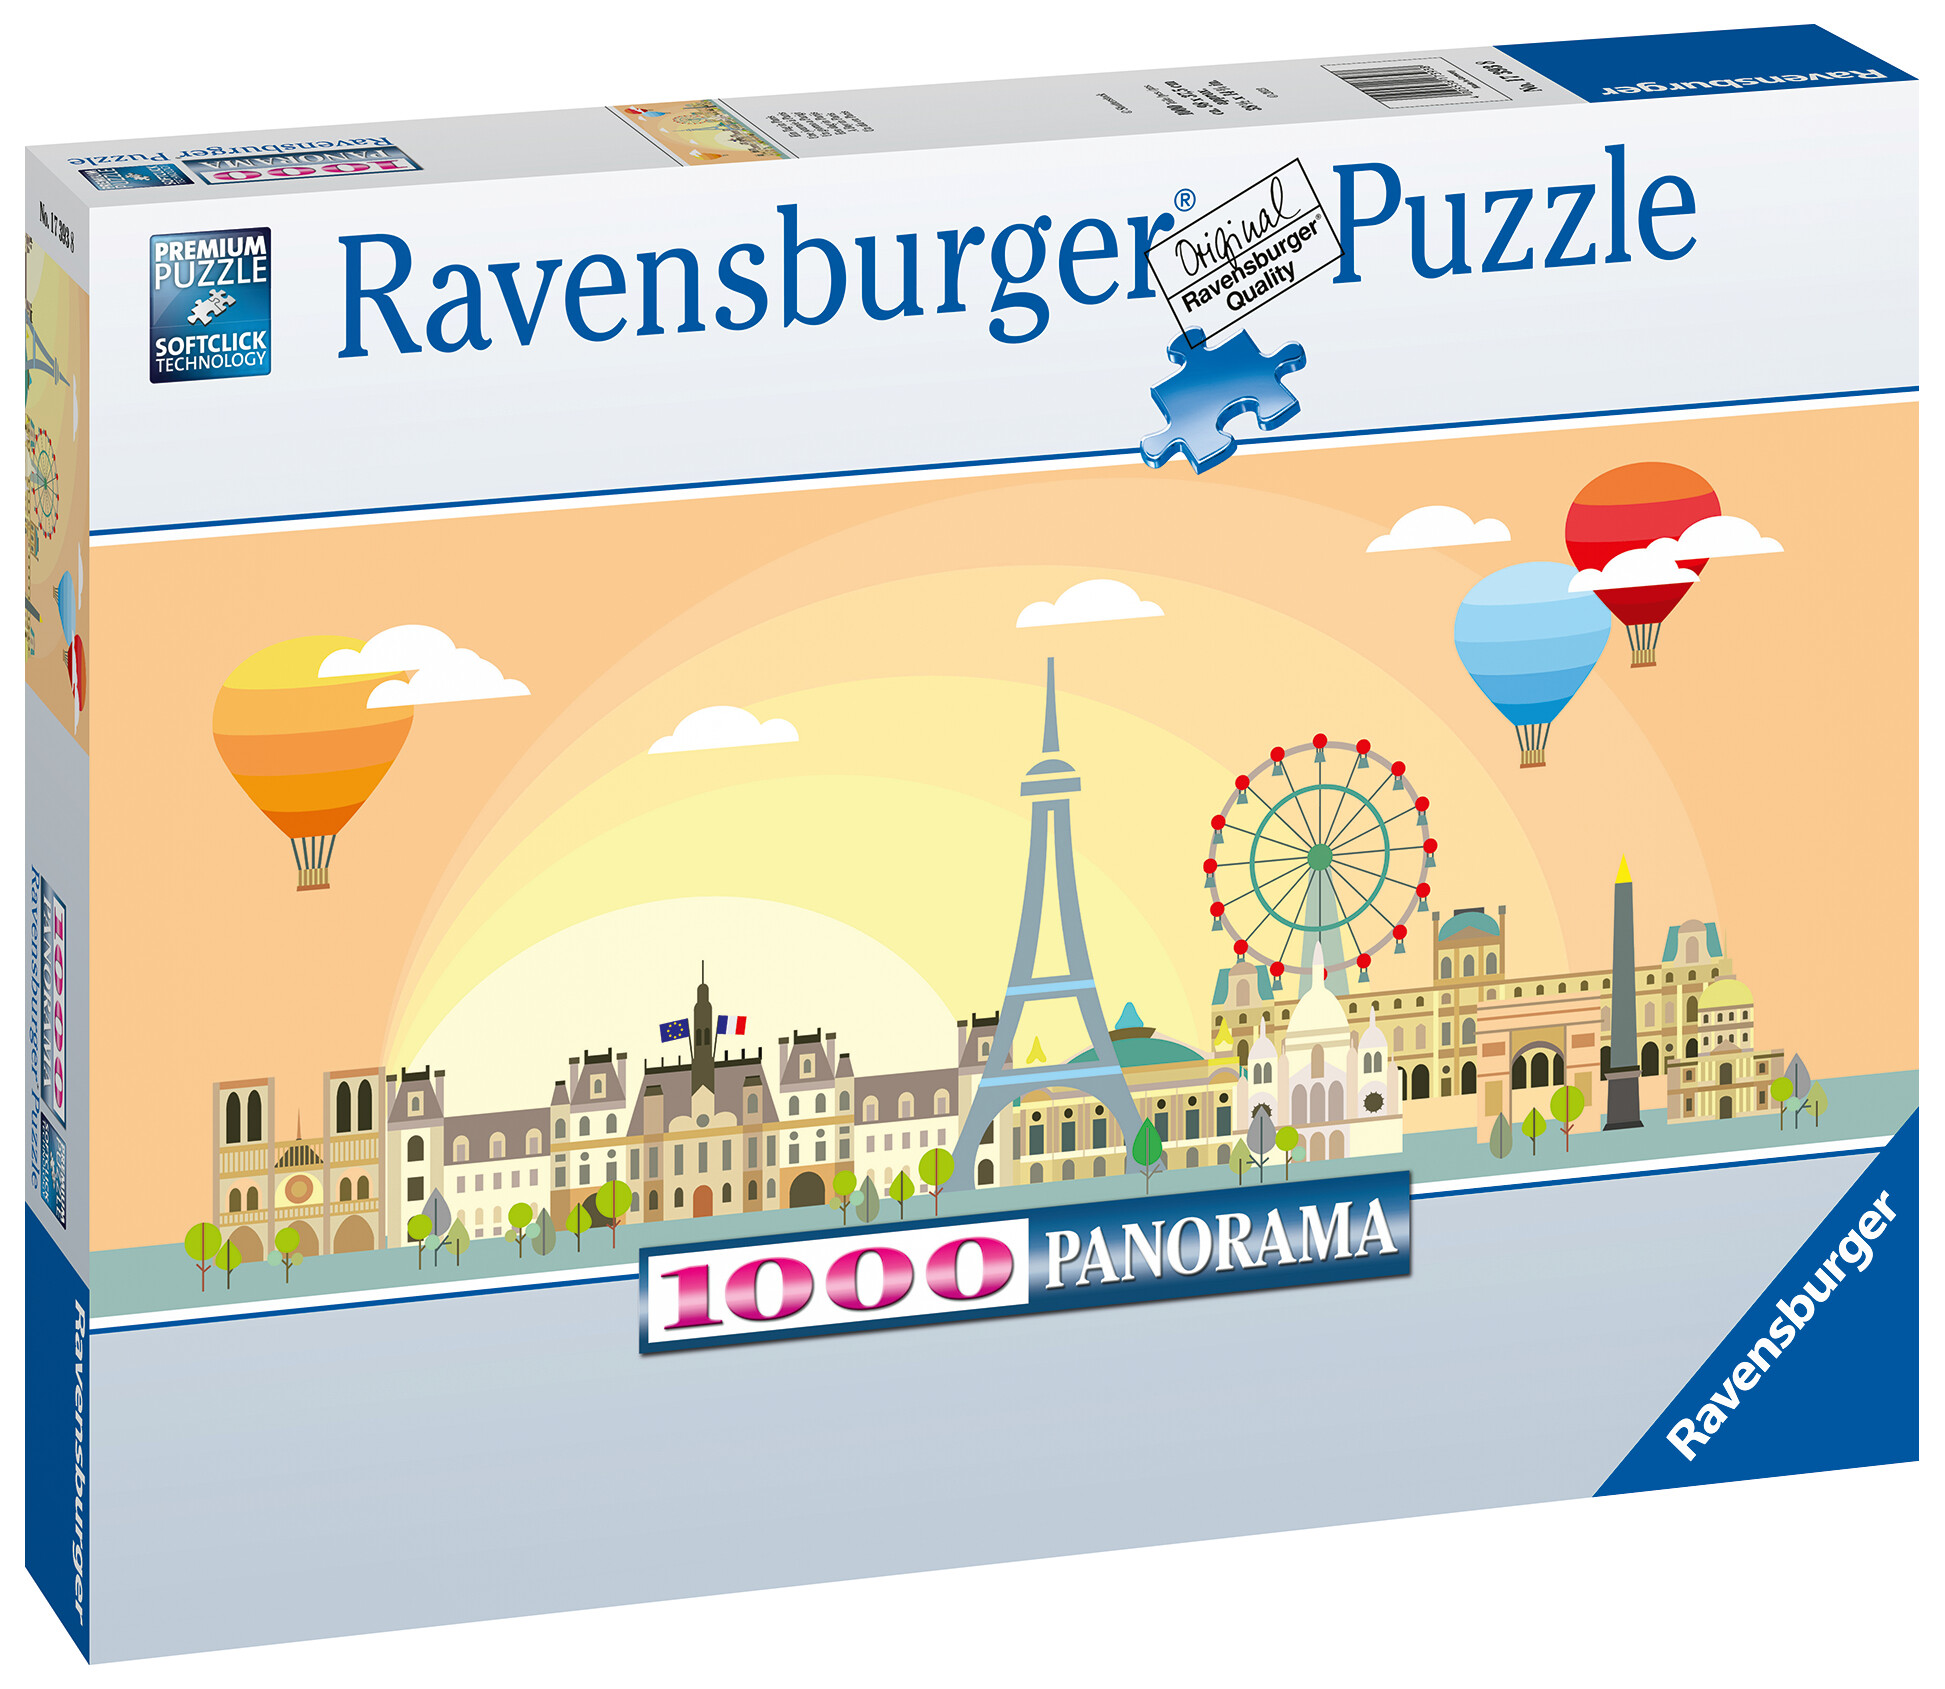 Ravensburger - puzzle un giorno a parigi, collezione panorama, 1000 pezzi, puzzle adulti - RAVENSBURGER